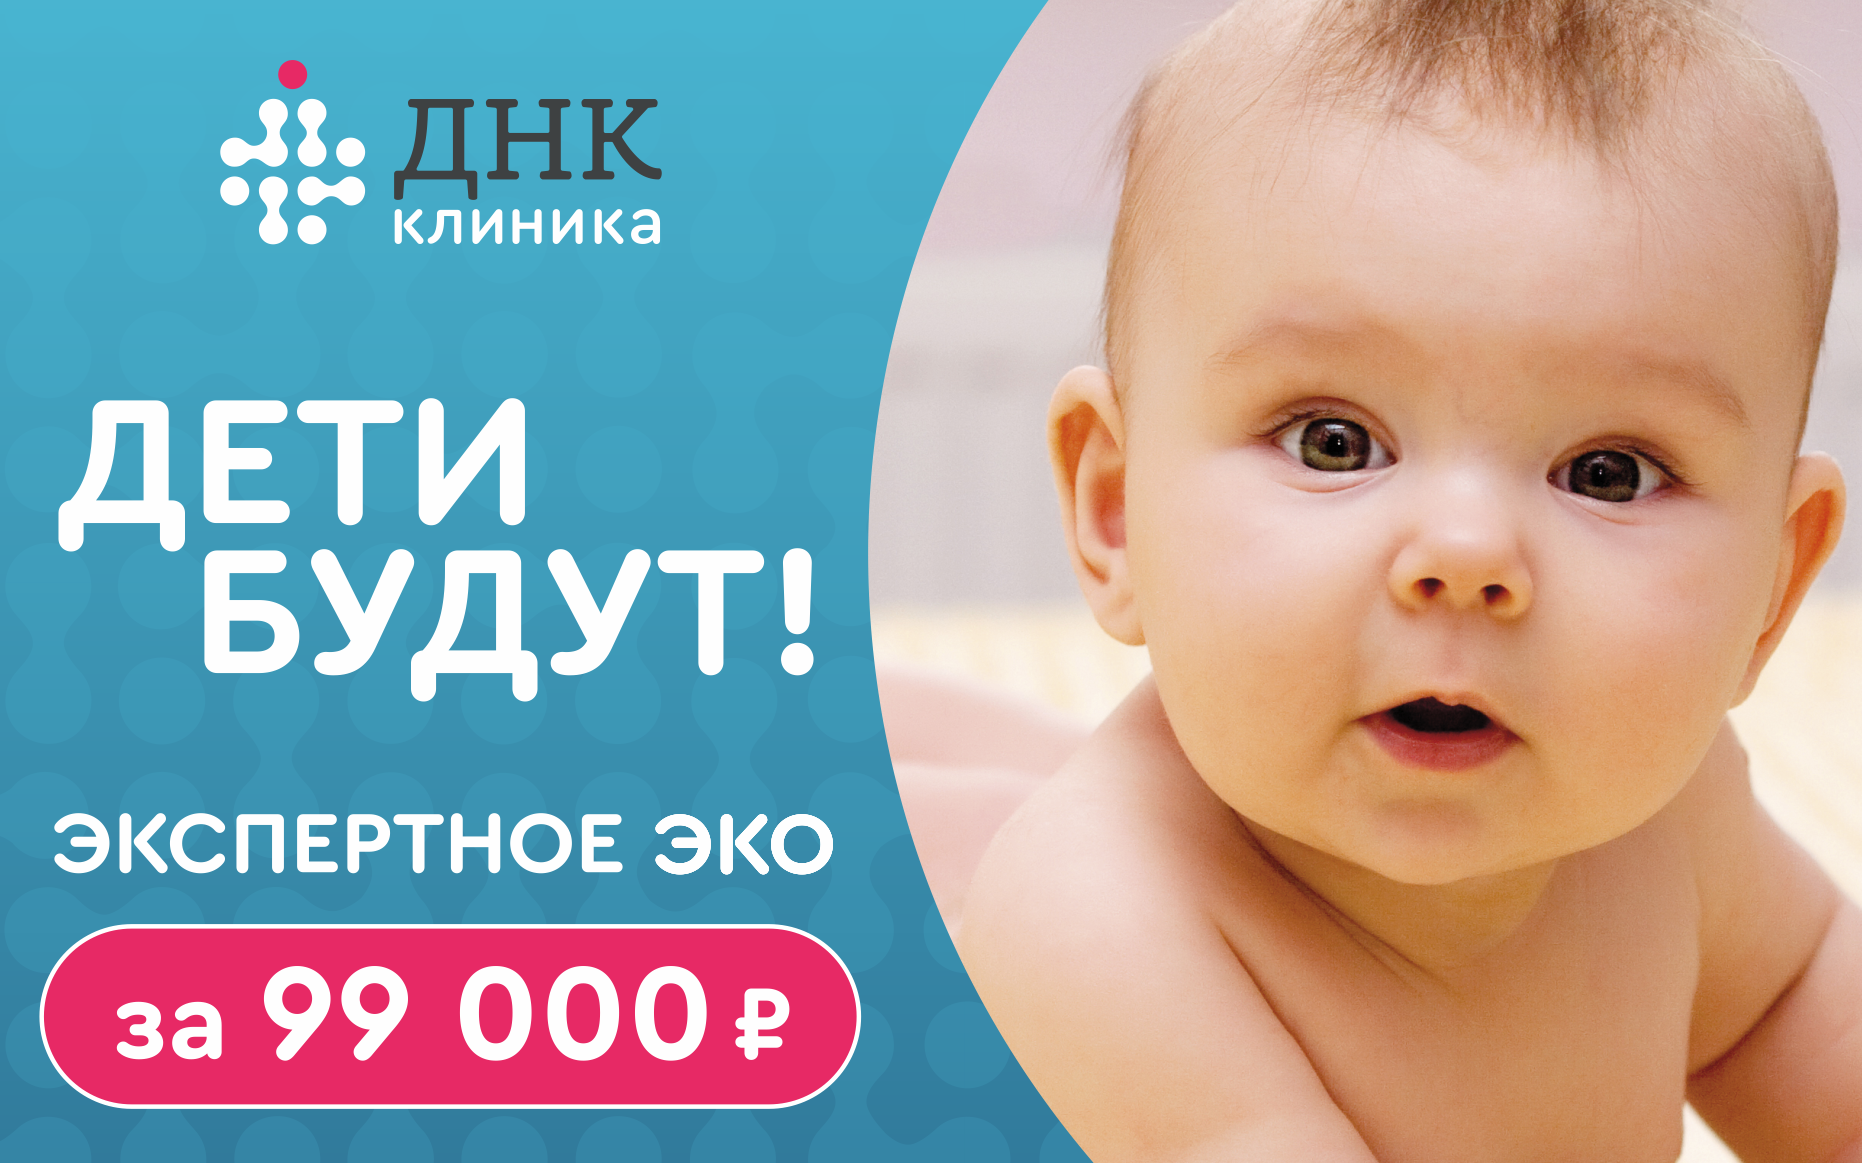 Экспертное ЭКО за 99 000 рублей!